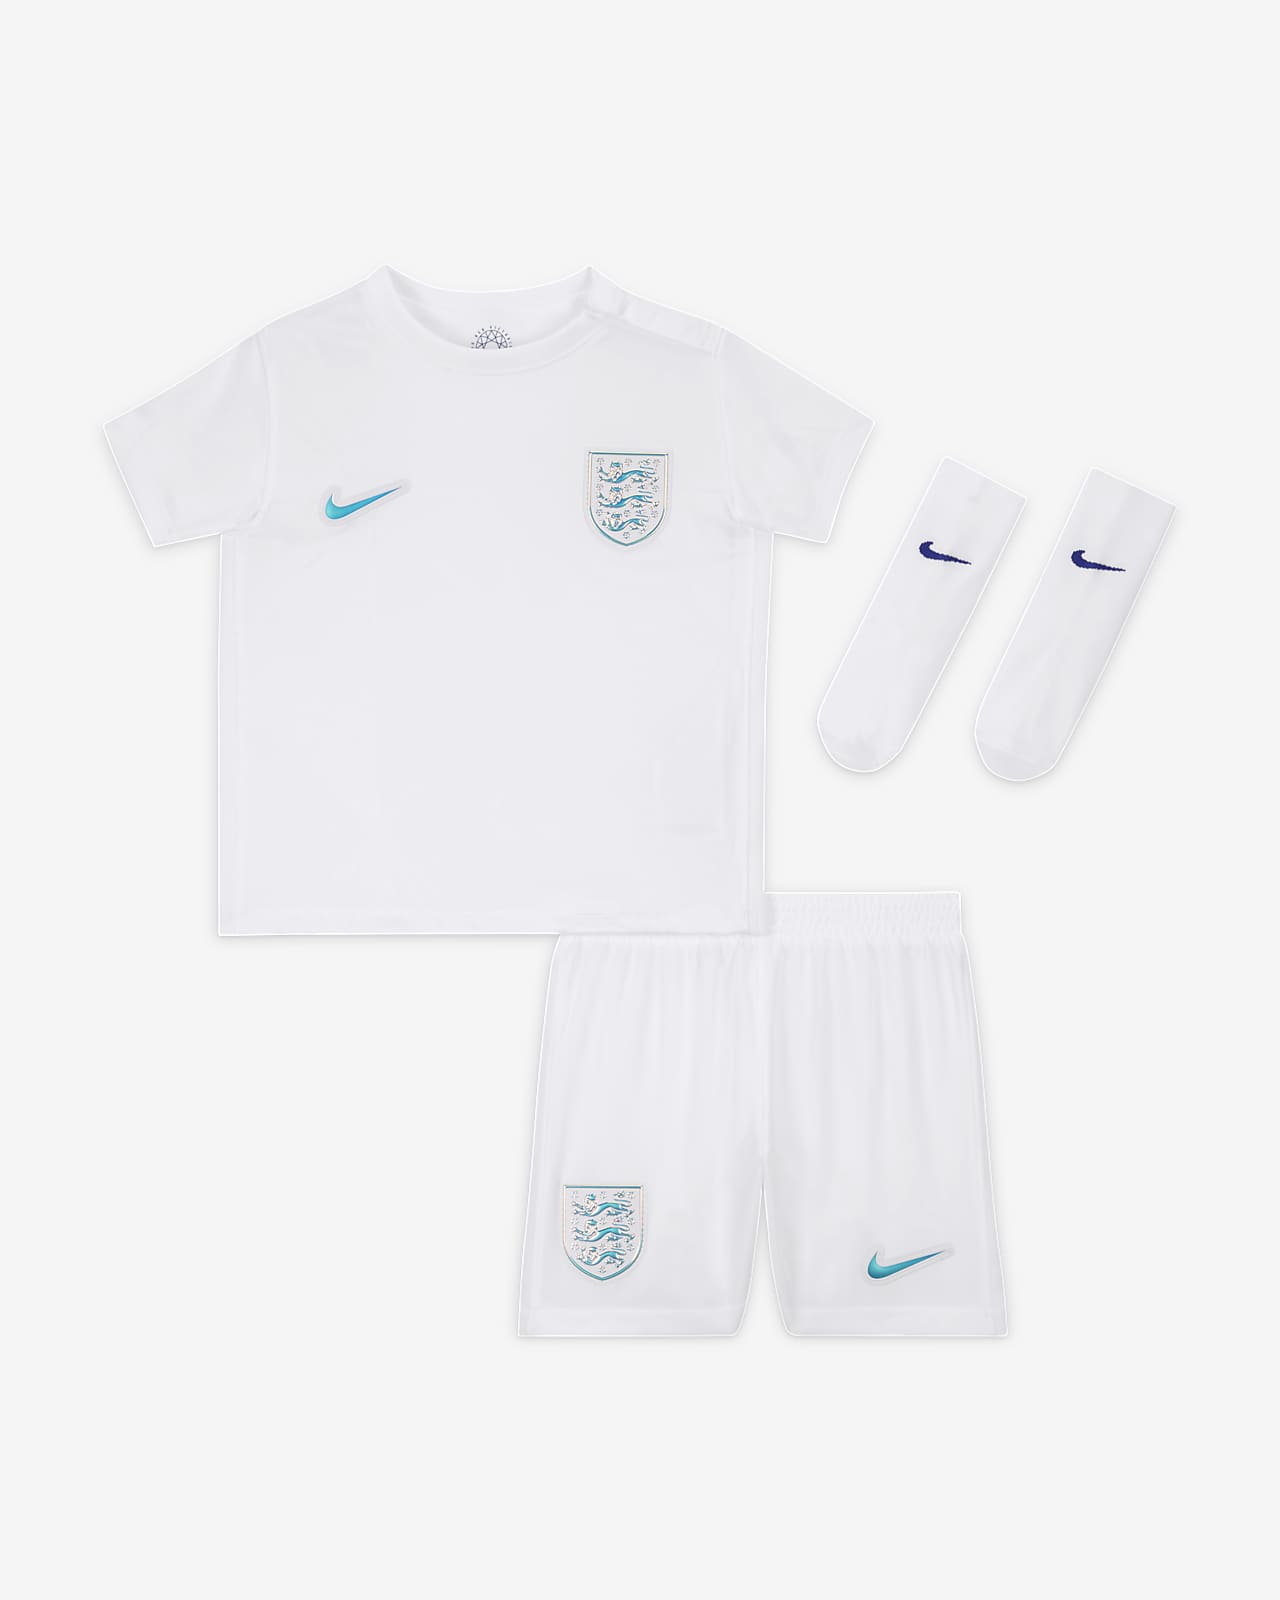 Domácí fotbalová souprava Nike Anglie 2022 pro kojence a batolata